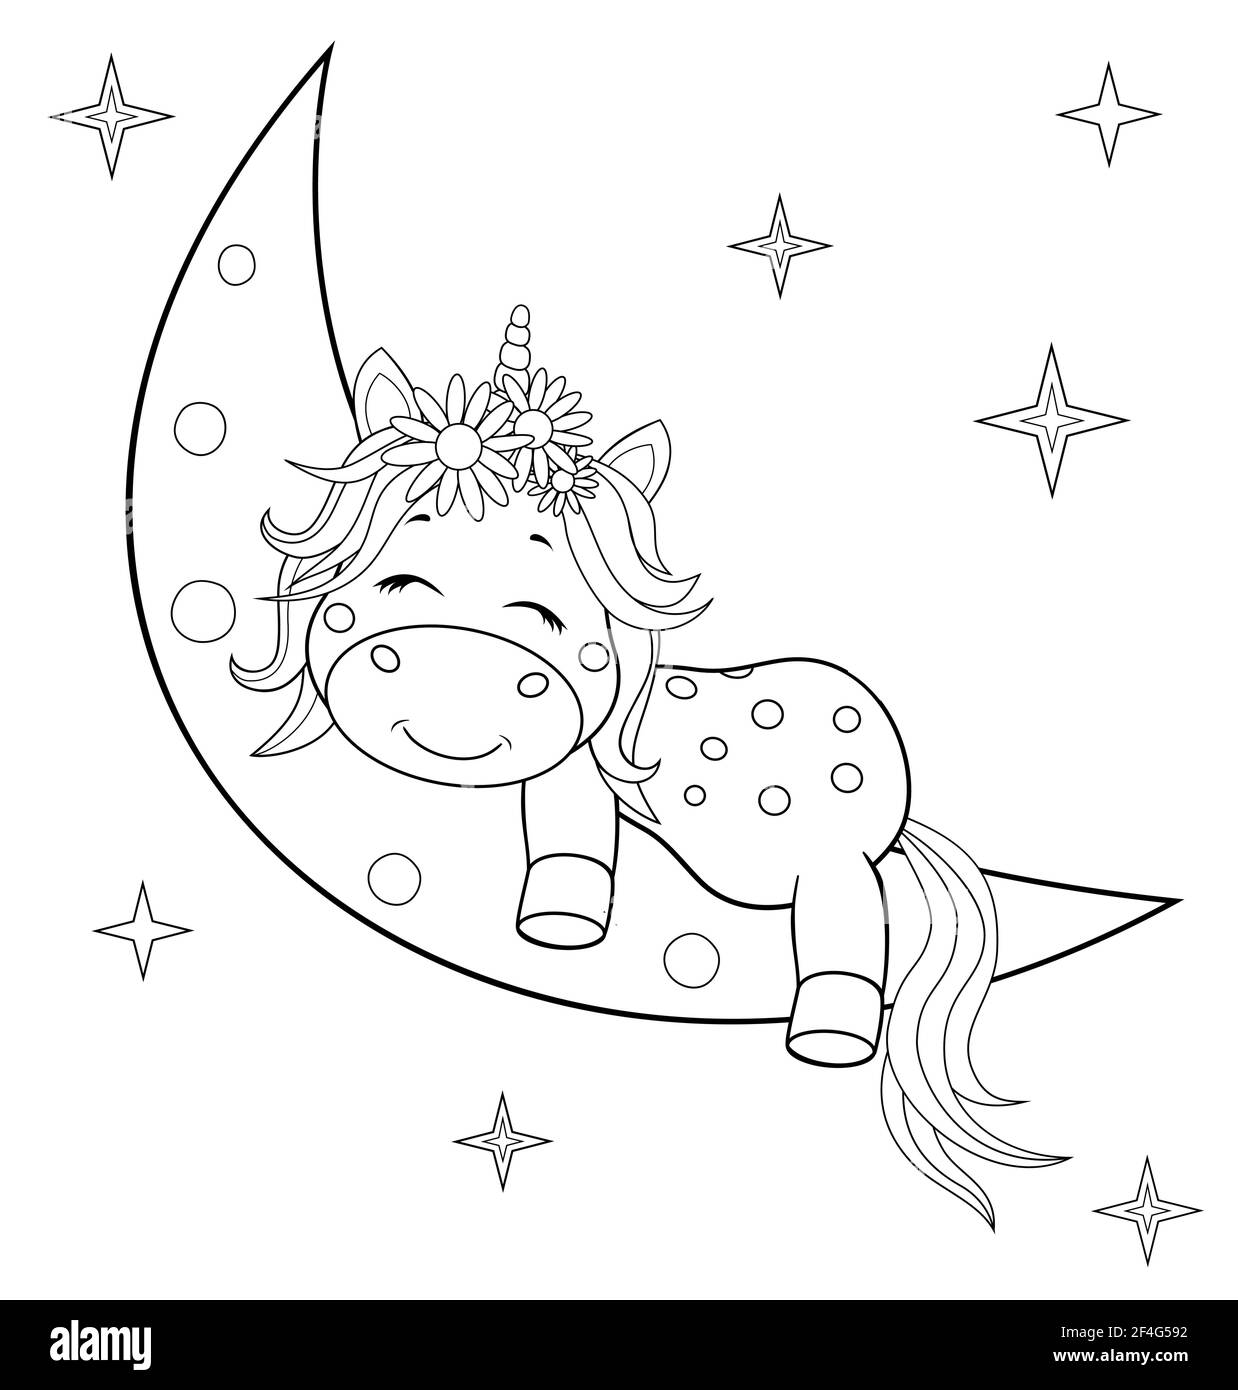 Ein kleines Einhorn mit Mähne und Schwanz schläft auf dem Mond. Skizze in Konturen zum Einfärben. Stock Vektor